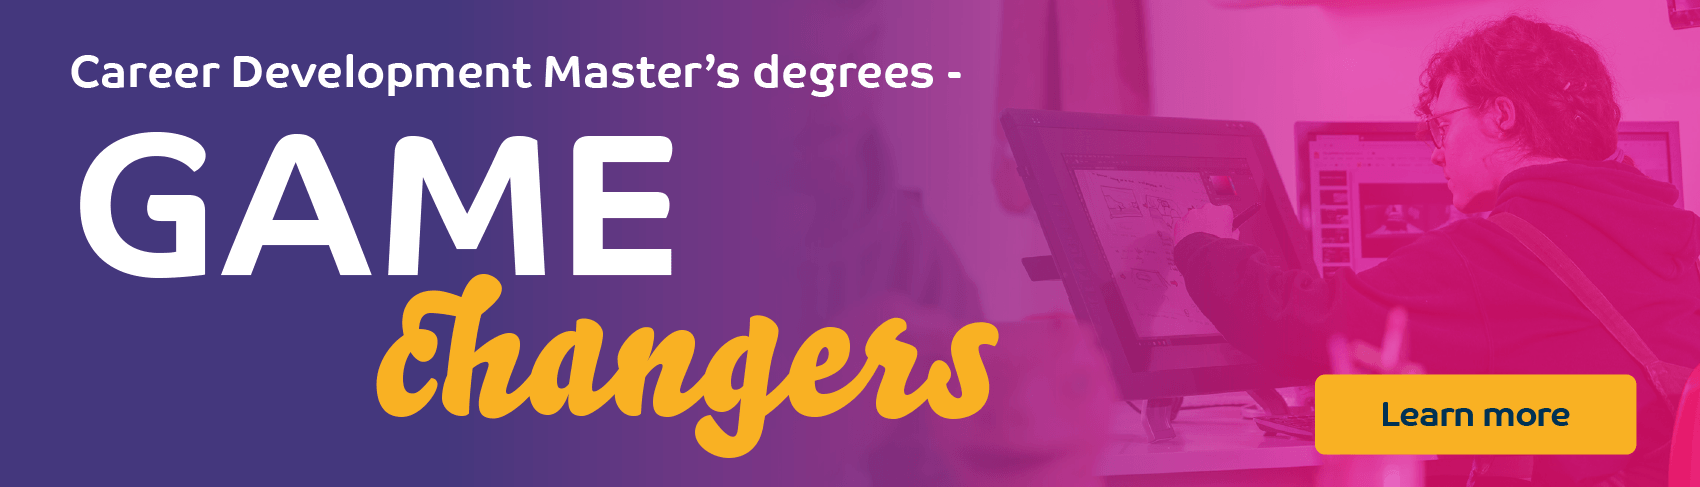 Game Changers - Career Development Master's Degrees